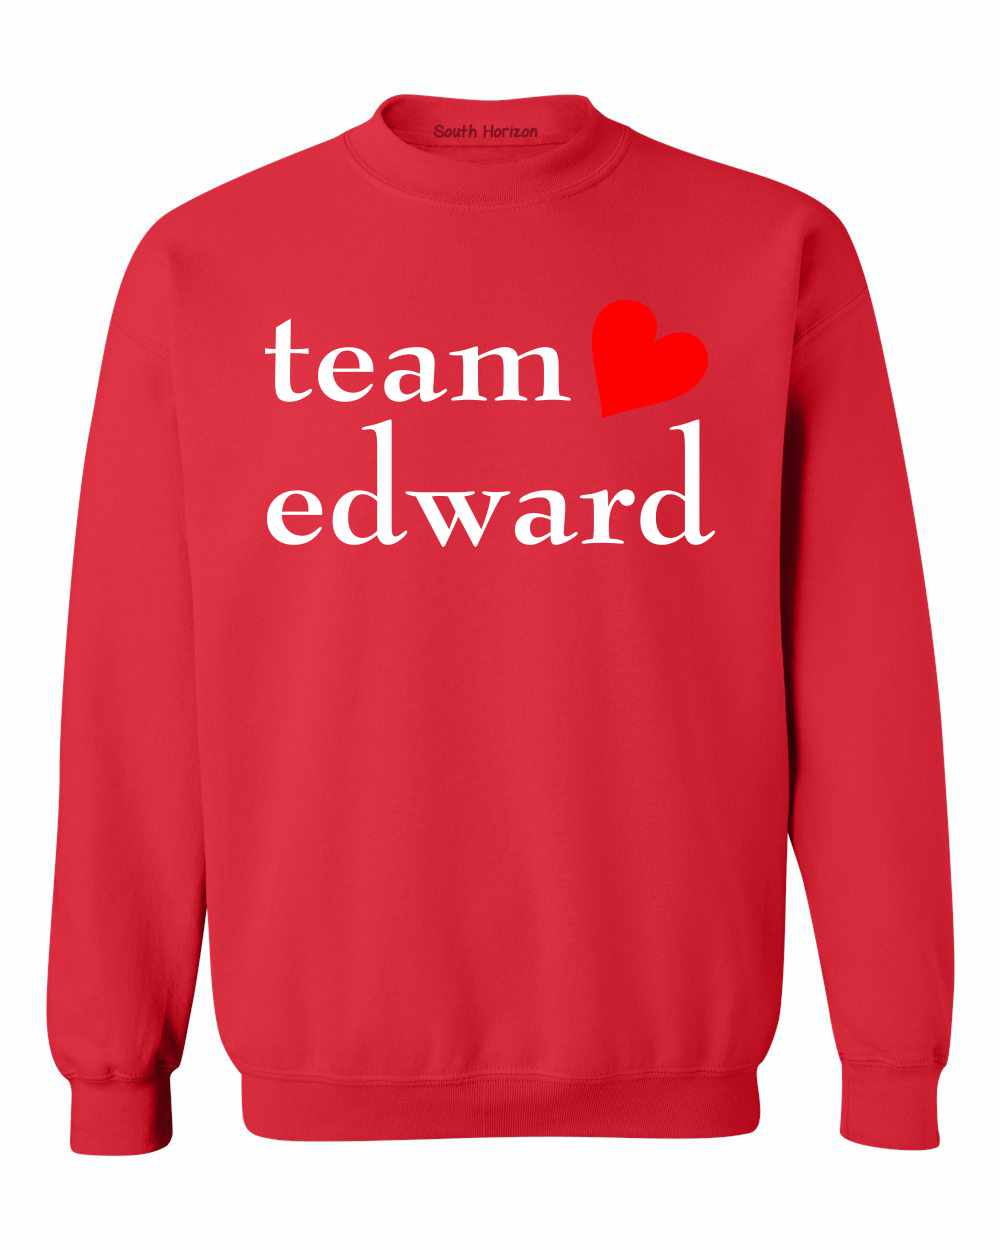 TEAM EDWARD Sweat Shirt (#274-11)